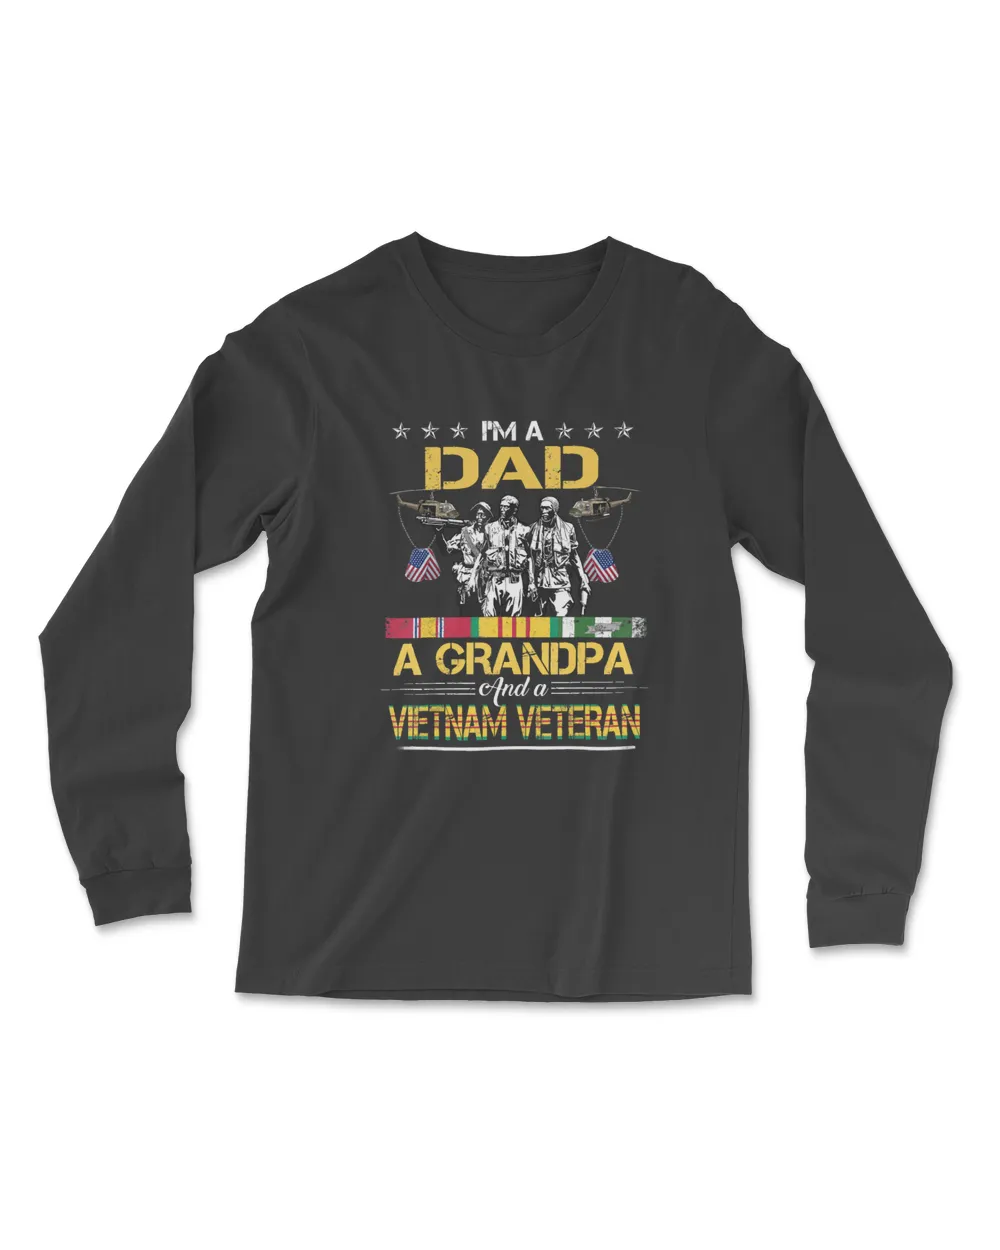 Dad Grandpa Vietnam Veteran   Military Mens